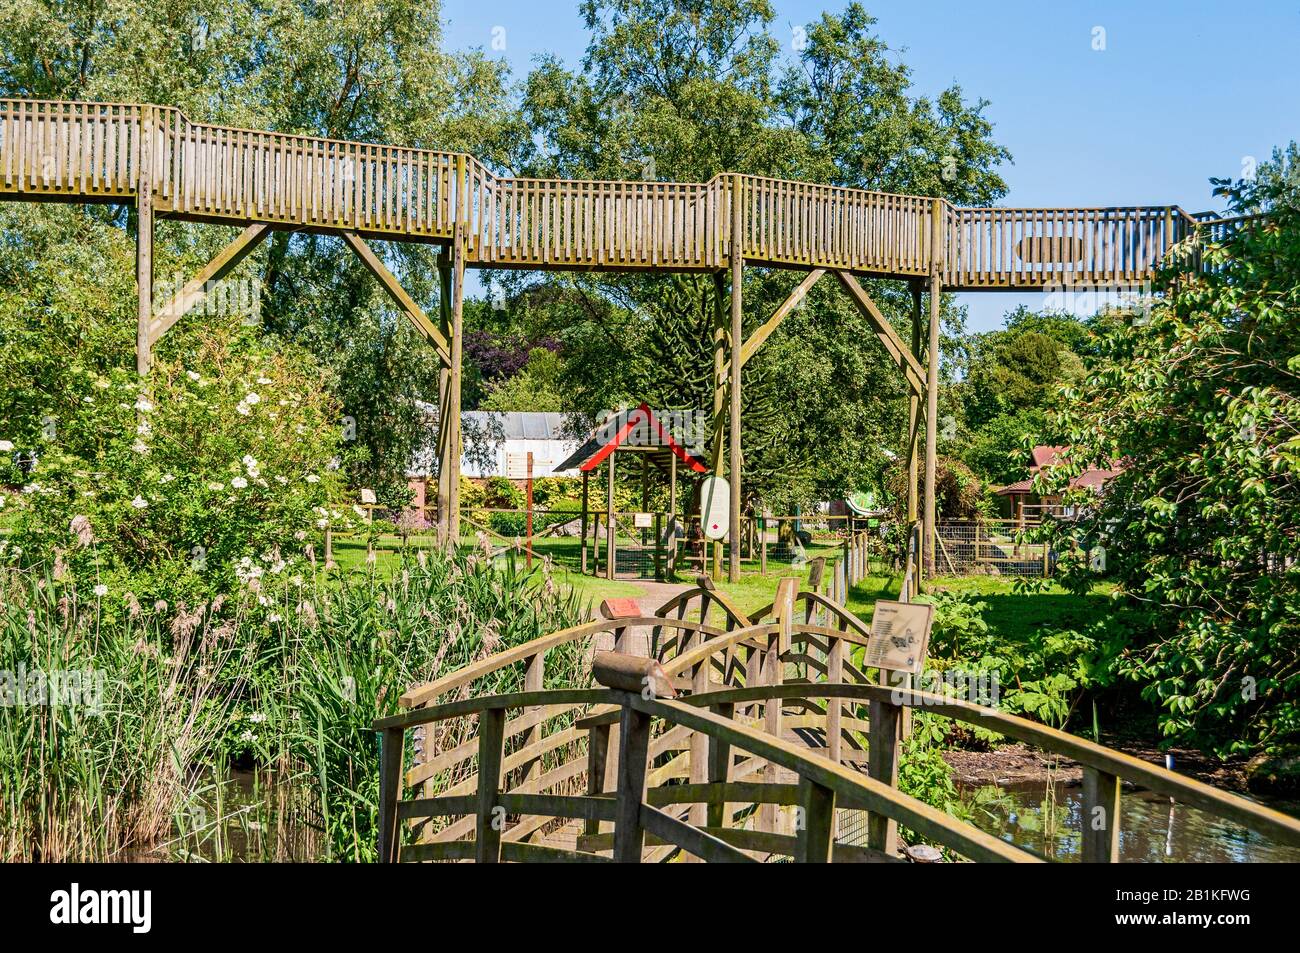 La passeggiata in legno di tigre si affaccia sui ponti ad arco e sulla vegetazione che attraversa una piscina mentre passa davanti a alberi verdi ancora più alti Foto Stock